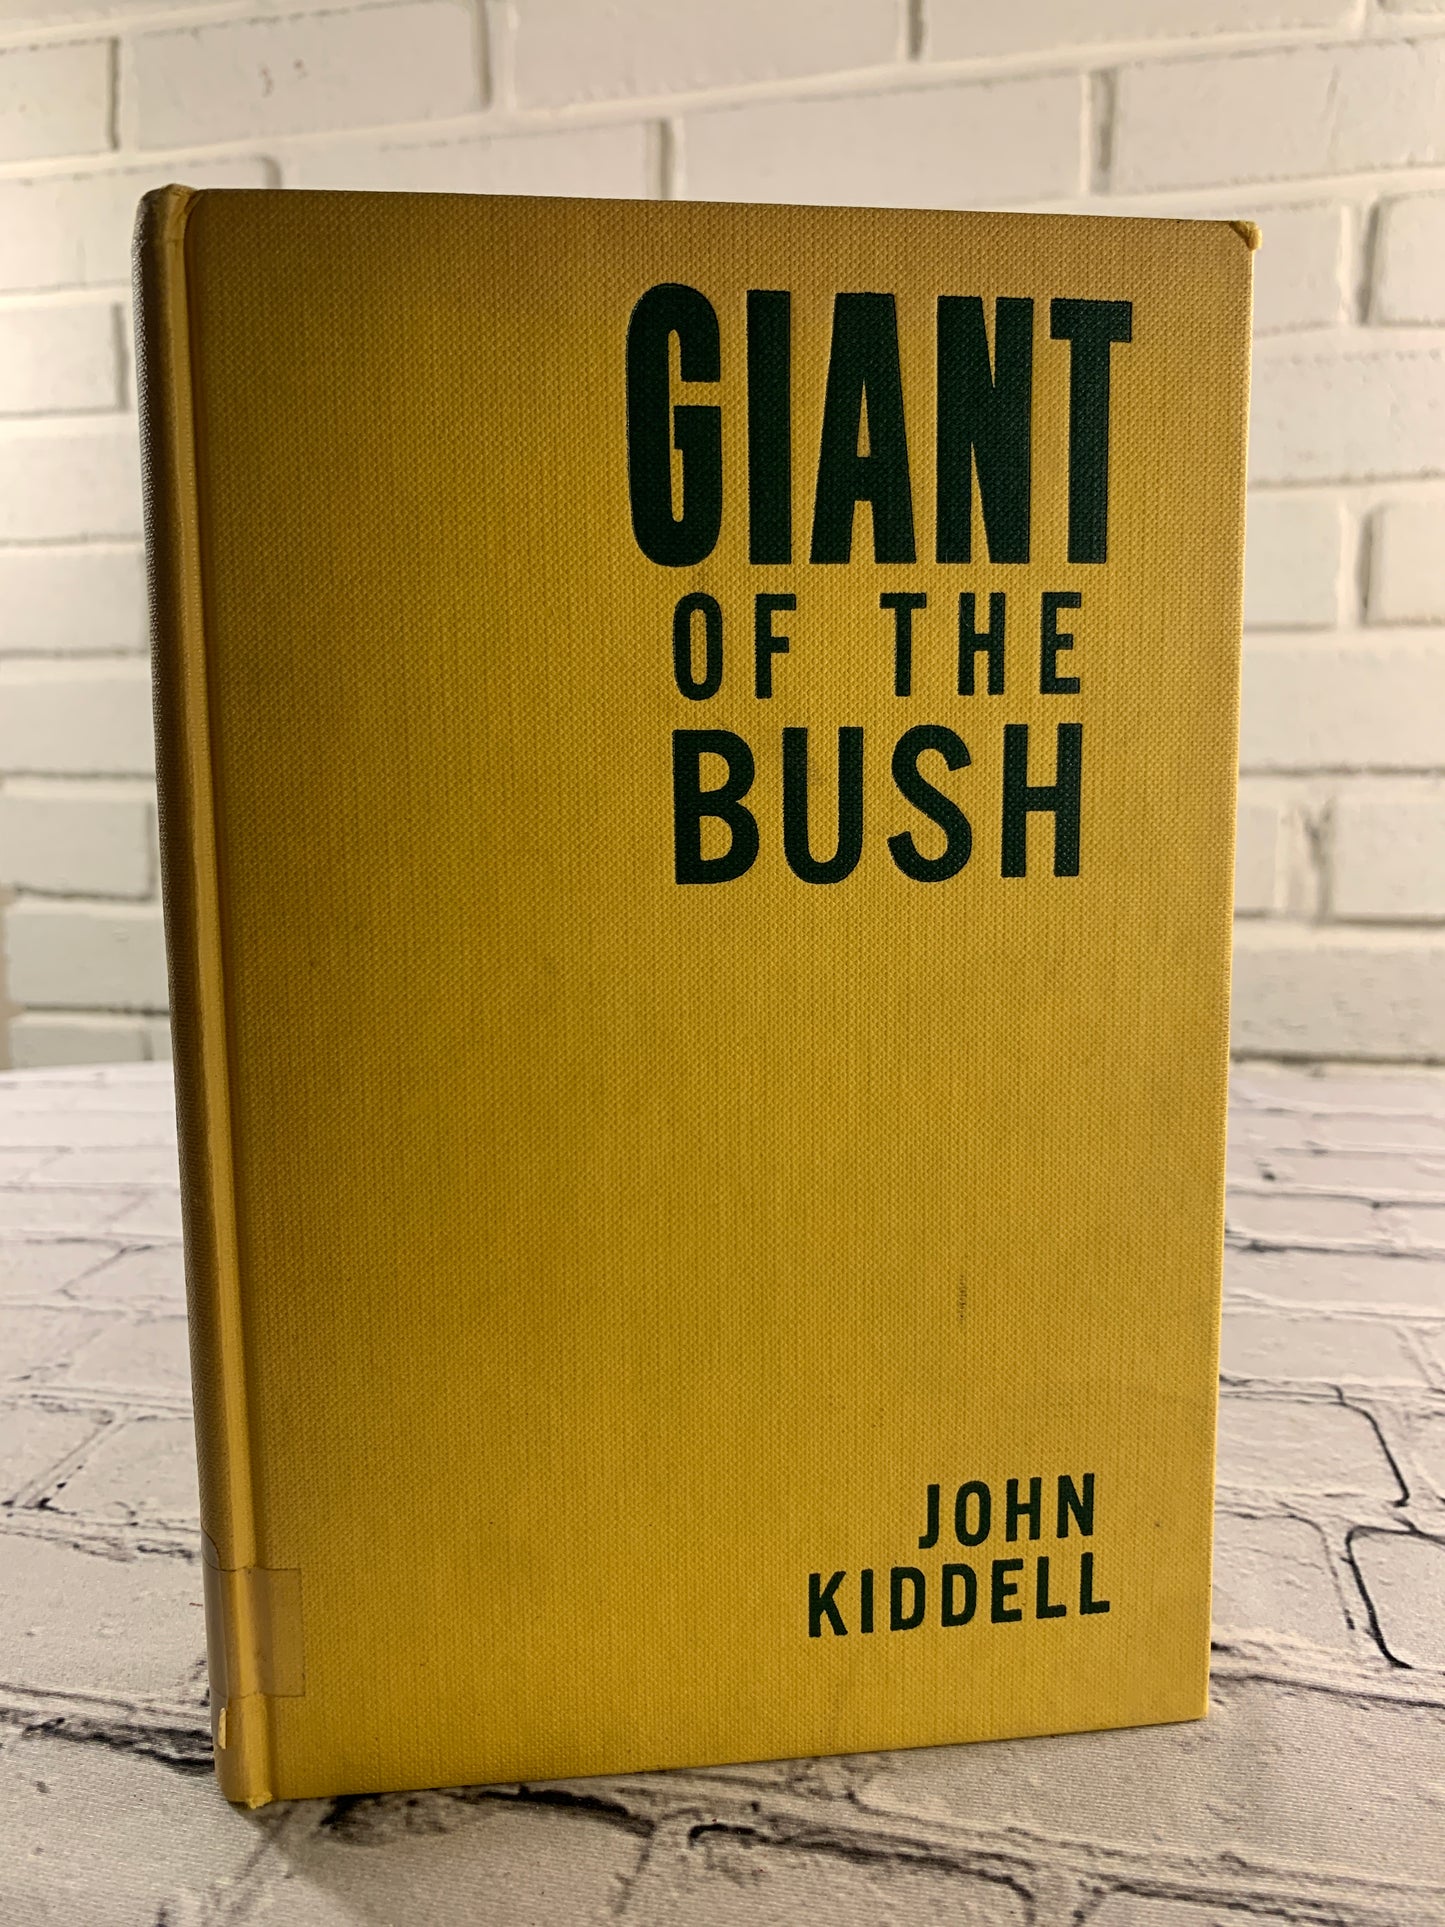 Giant of the Bush by John Kiddell [1962]